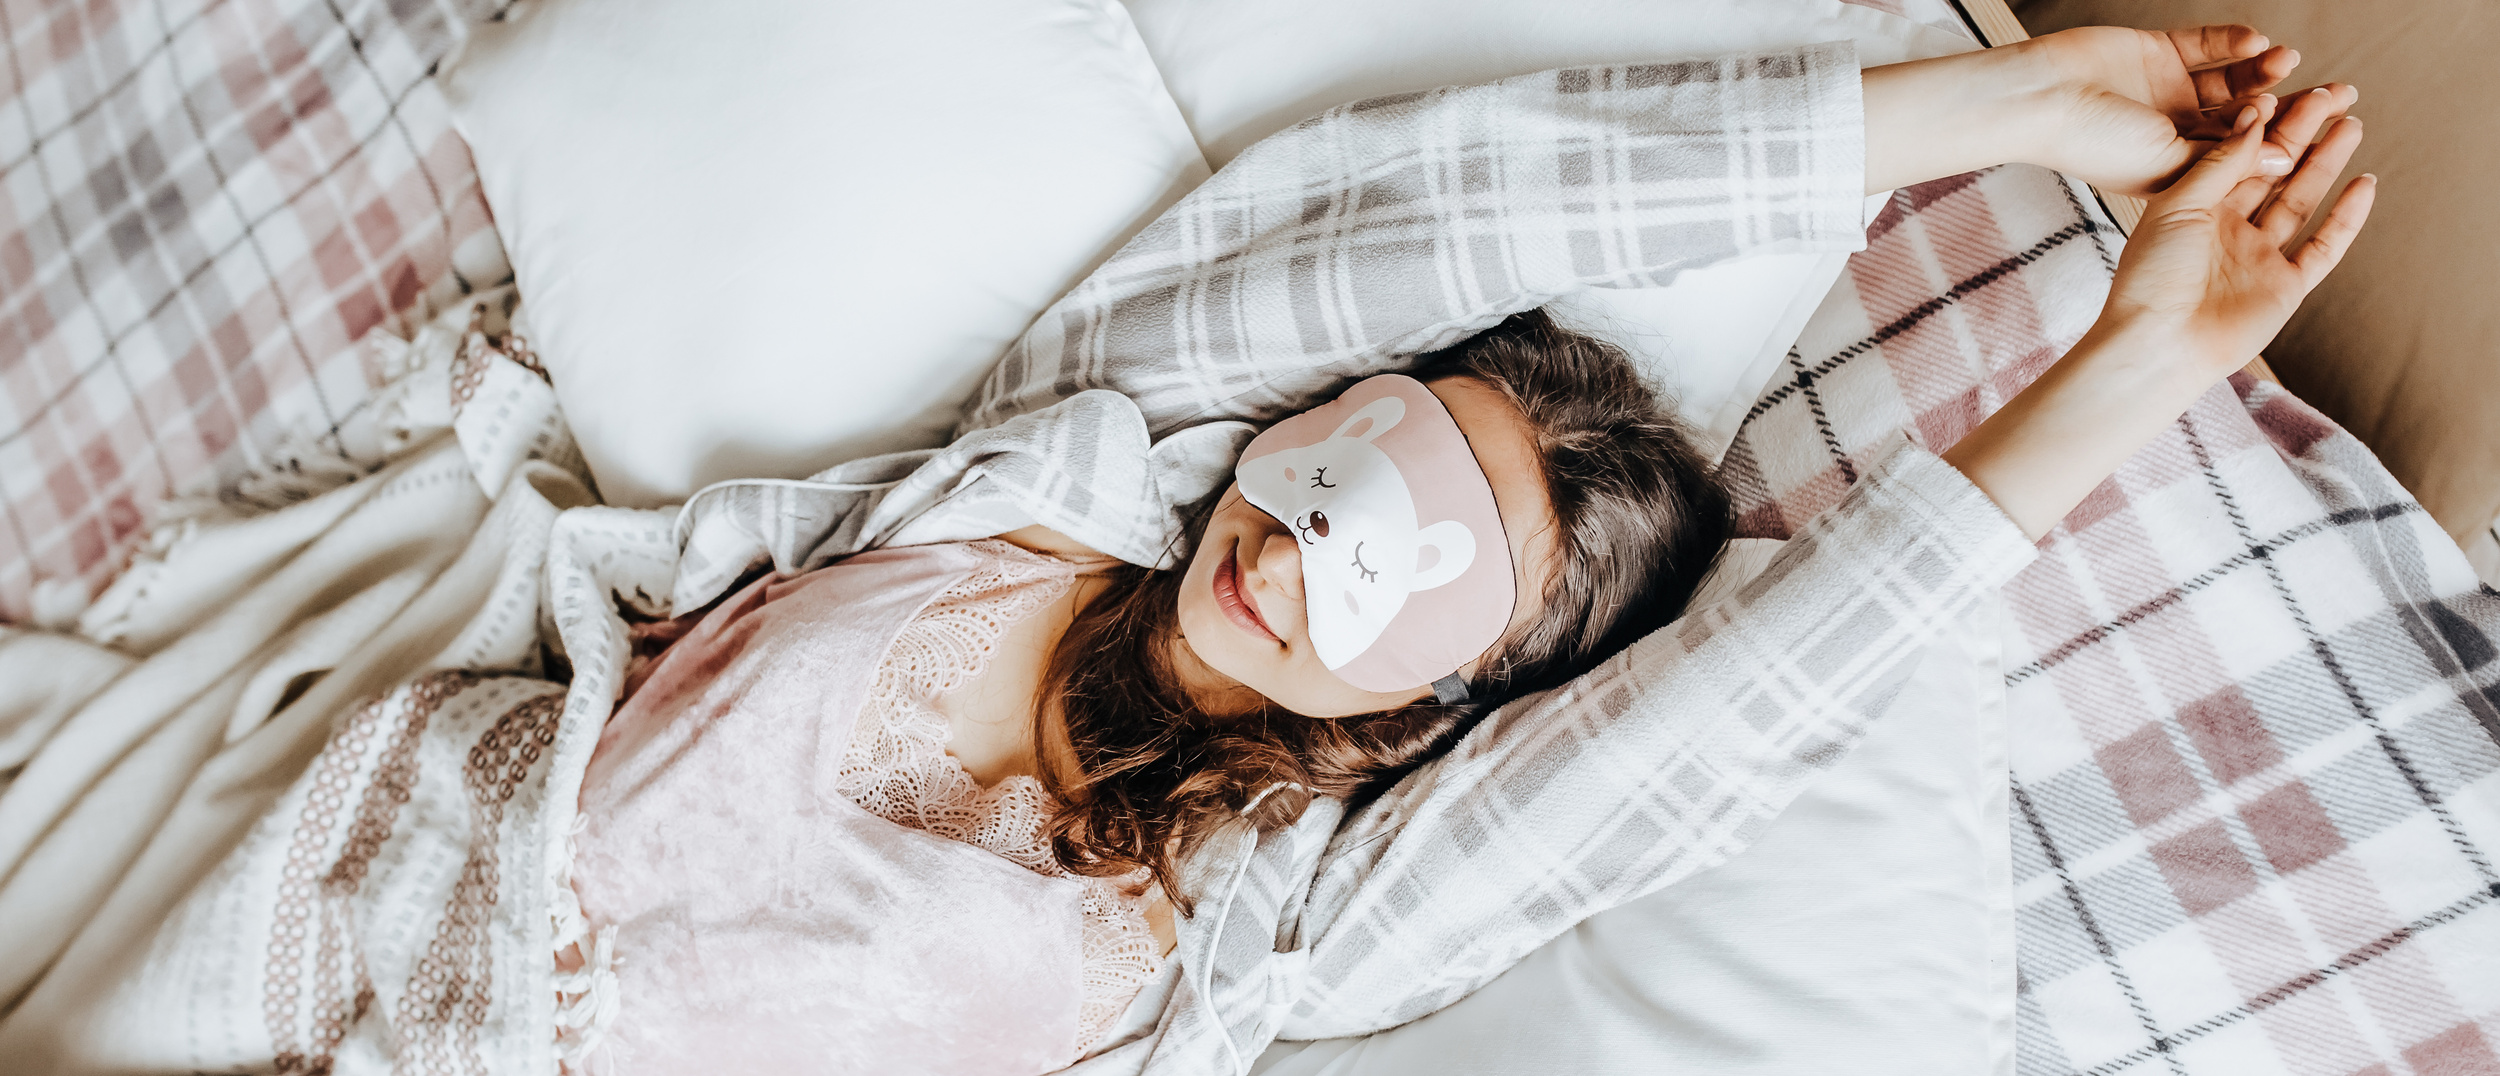 La pratique d'une activité physique dans la journée améliorerait la qualité du sommeil selon une nouvelle étude. © Daria Lukoiko, Adobe Stock